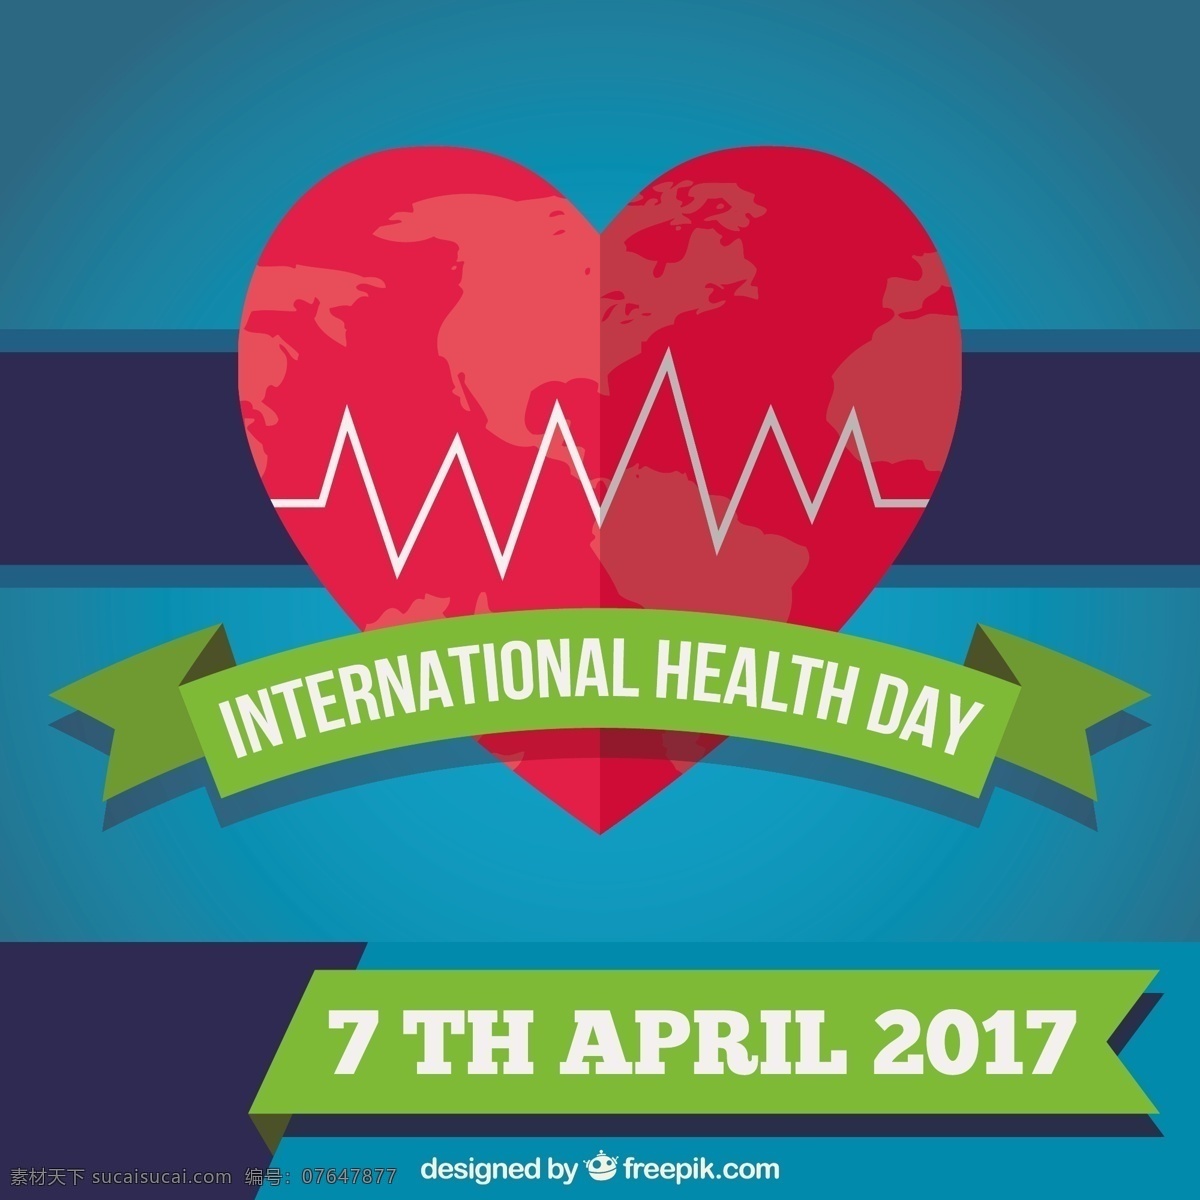 世界 卫生日 背景 心脏 医疗 医生 健康 医院 人 医学 生活 保险 护理 营养 安全 国际 日